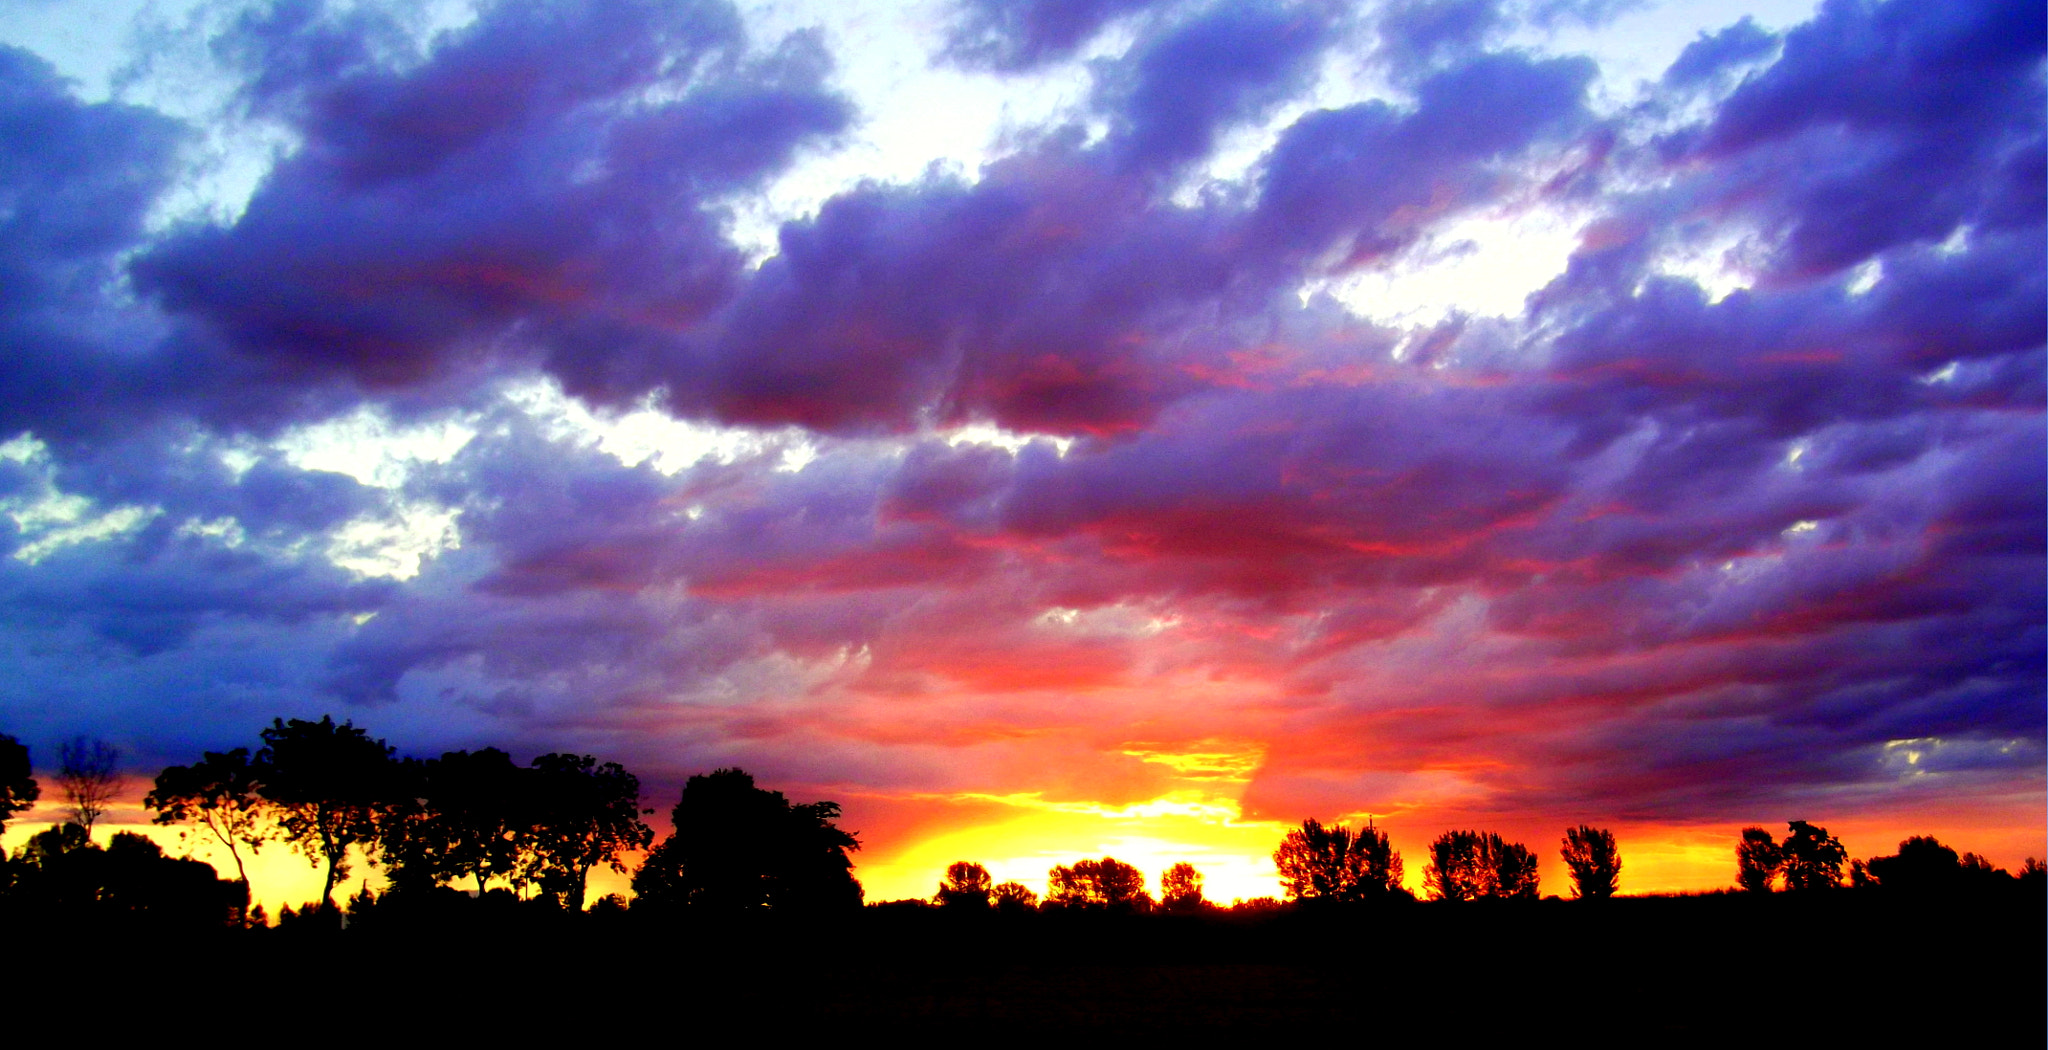 Fujifilm FinePix JX250 sample photo. Stupendo tramonto super nuvoloso. photography